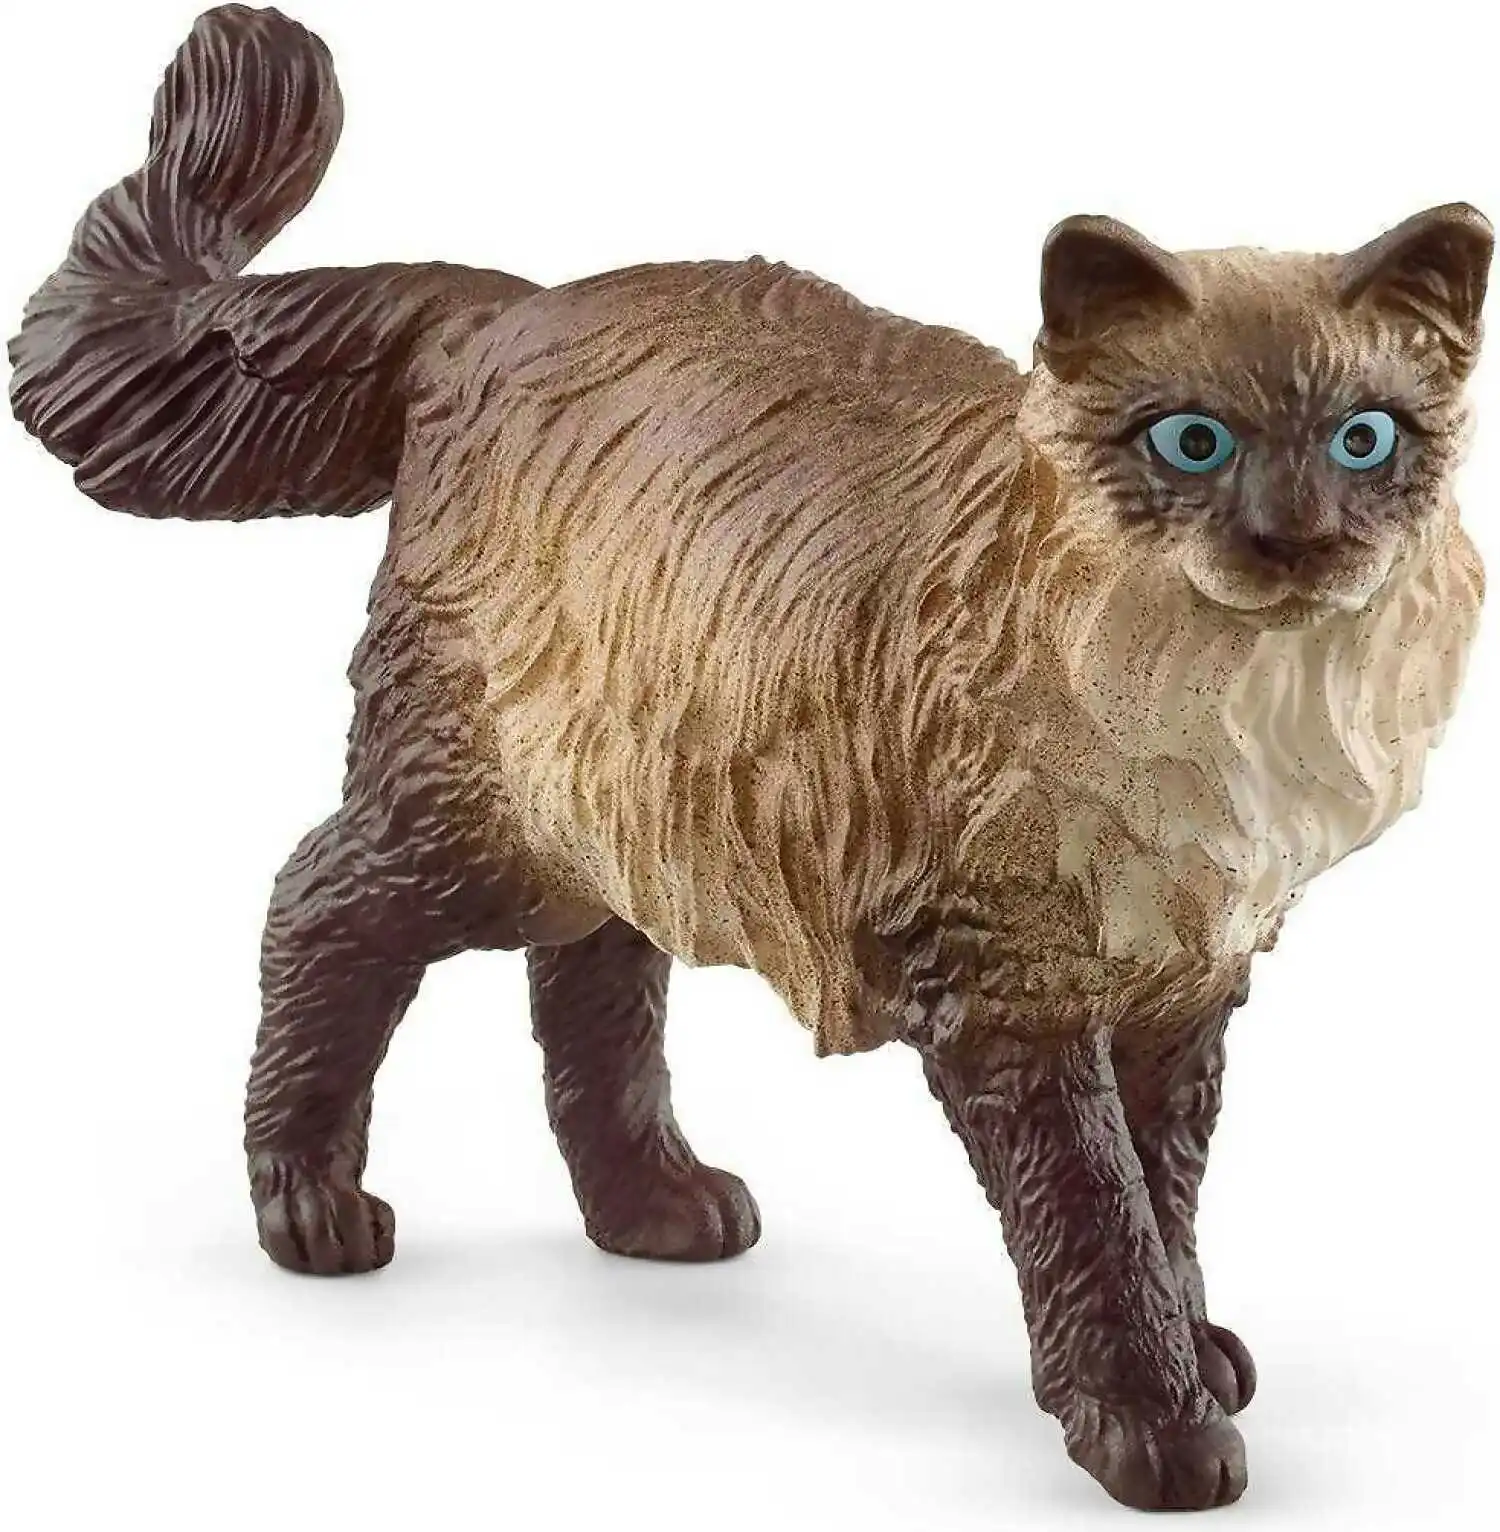 Schleich - Ragdoll Cat